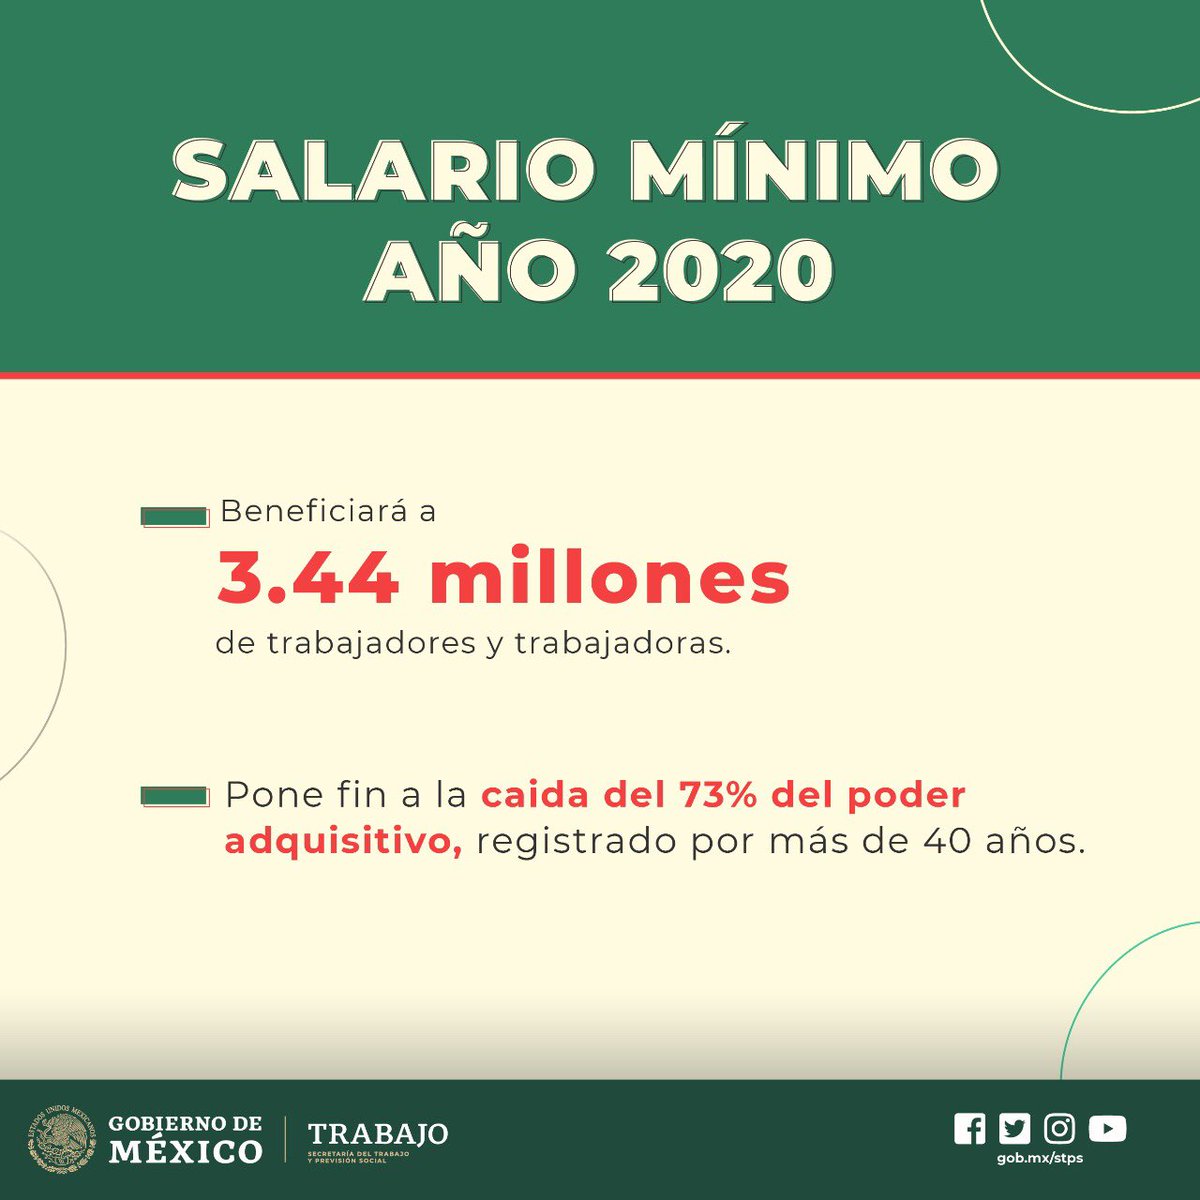 En 2019 aumentamos el #SalarioMínimo en un 16%, hecho impensable durante el neoliberalismo. 

Hoy anunciamos el aumento en un 20% para 2020, el mayor en términos reales de los últimos 44 años.

Estamos haciendo justicia con las y los trabajadores de México.